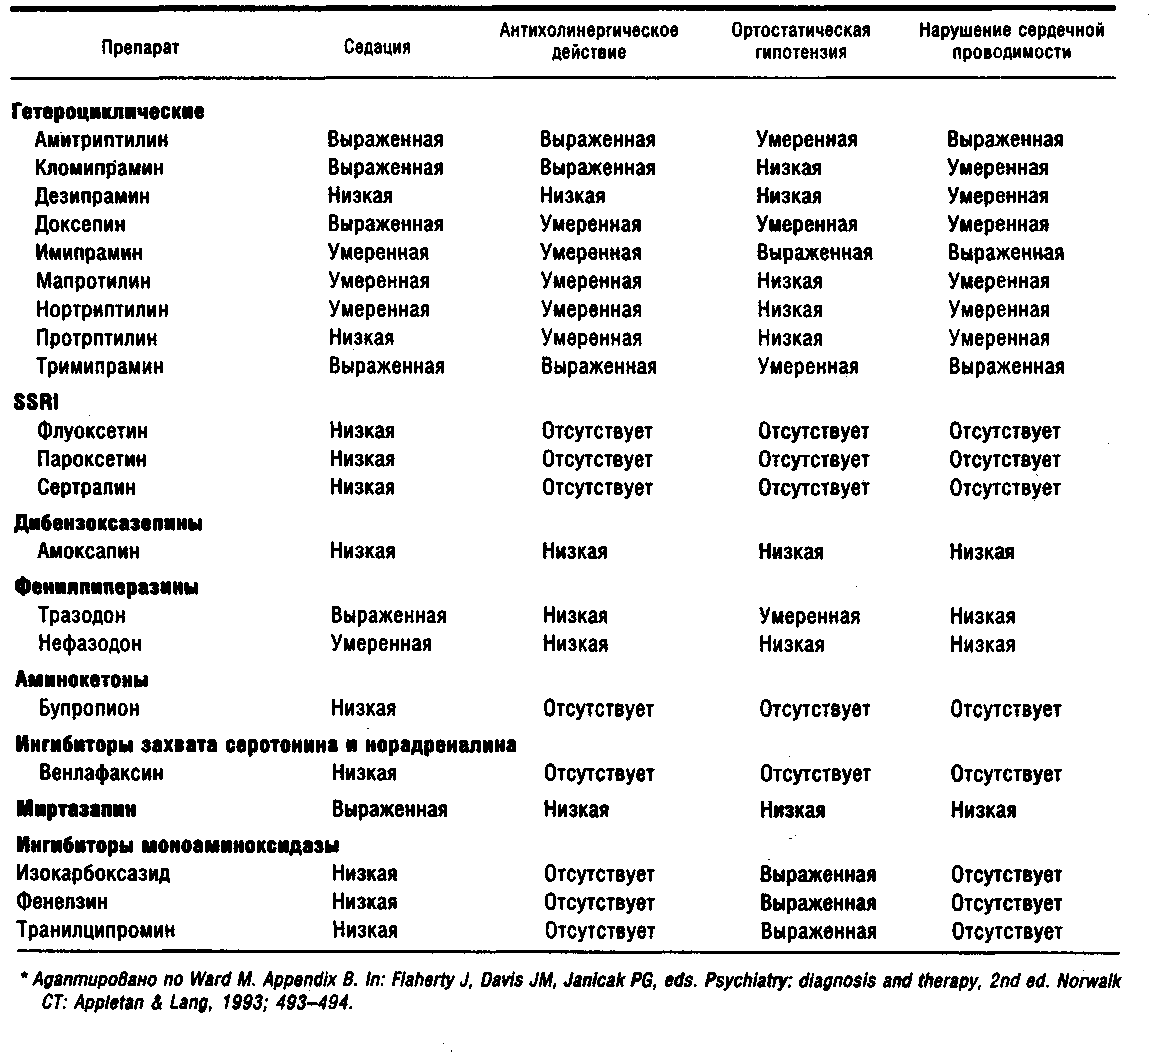 Антидепрессанты сроки. Антидепрессанты таблица с препаратами. Сравнение антидепрессантов таблица. Антидепрессанты 5 поколения список препаратов. Нежелательные эффекты антидепрессантов таблица.